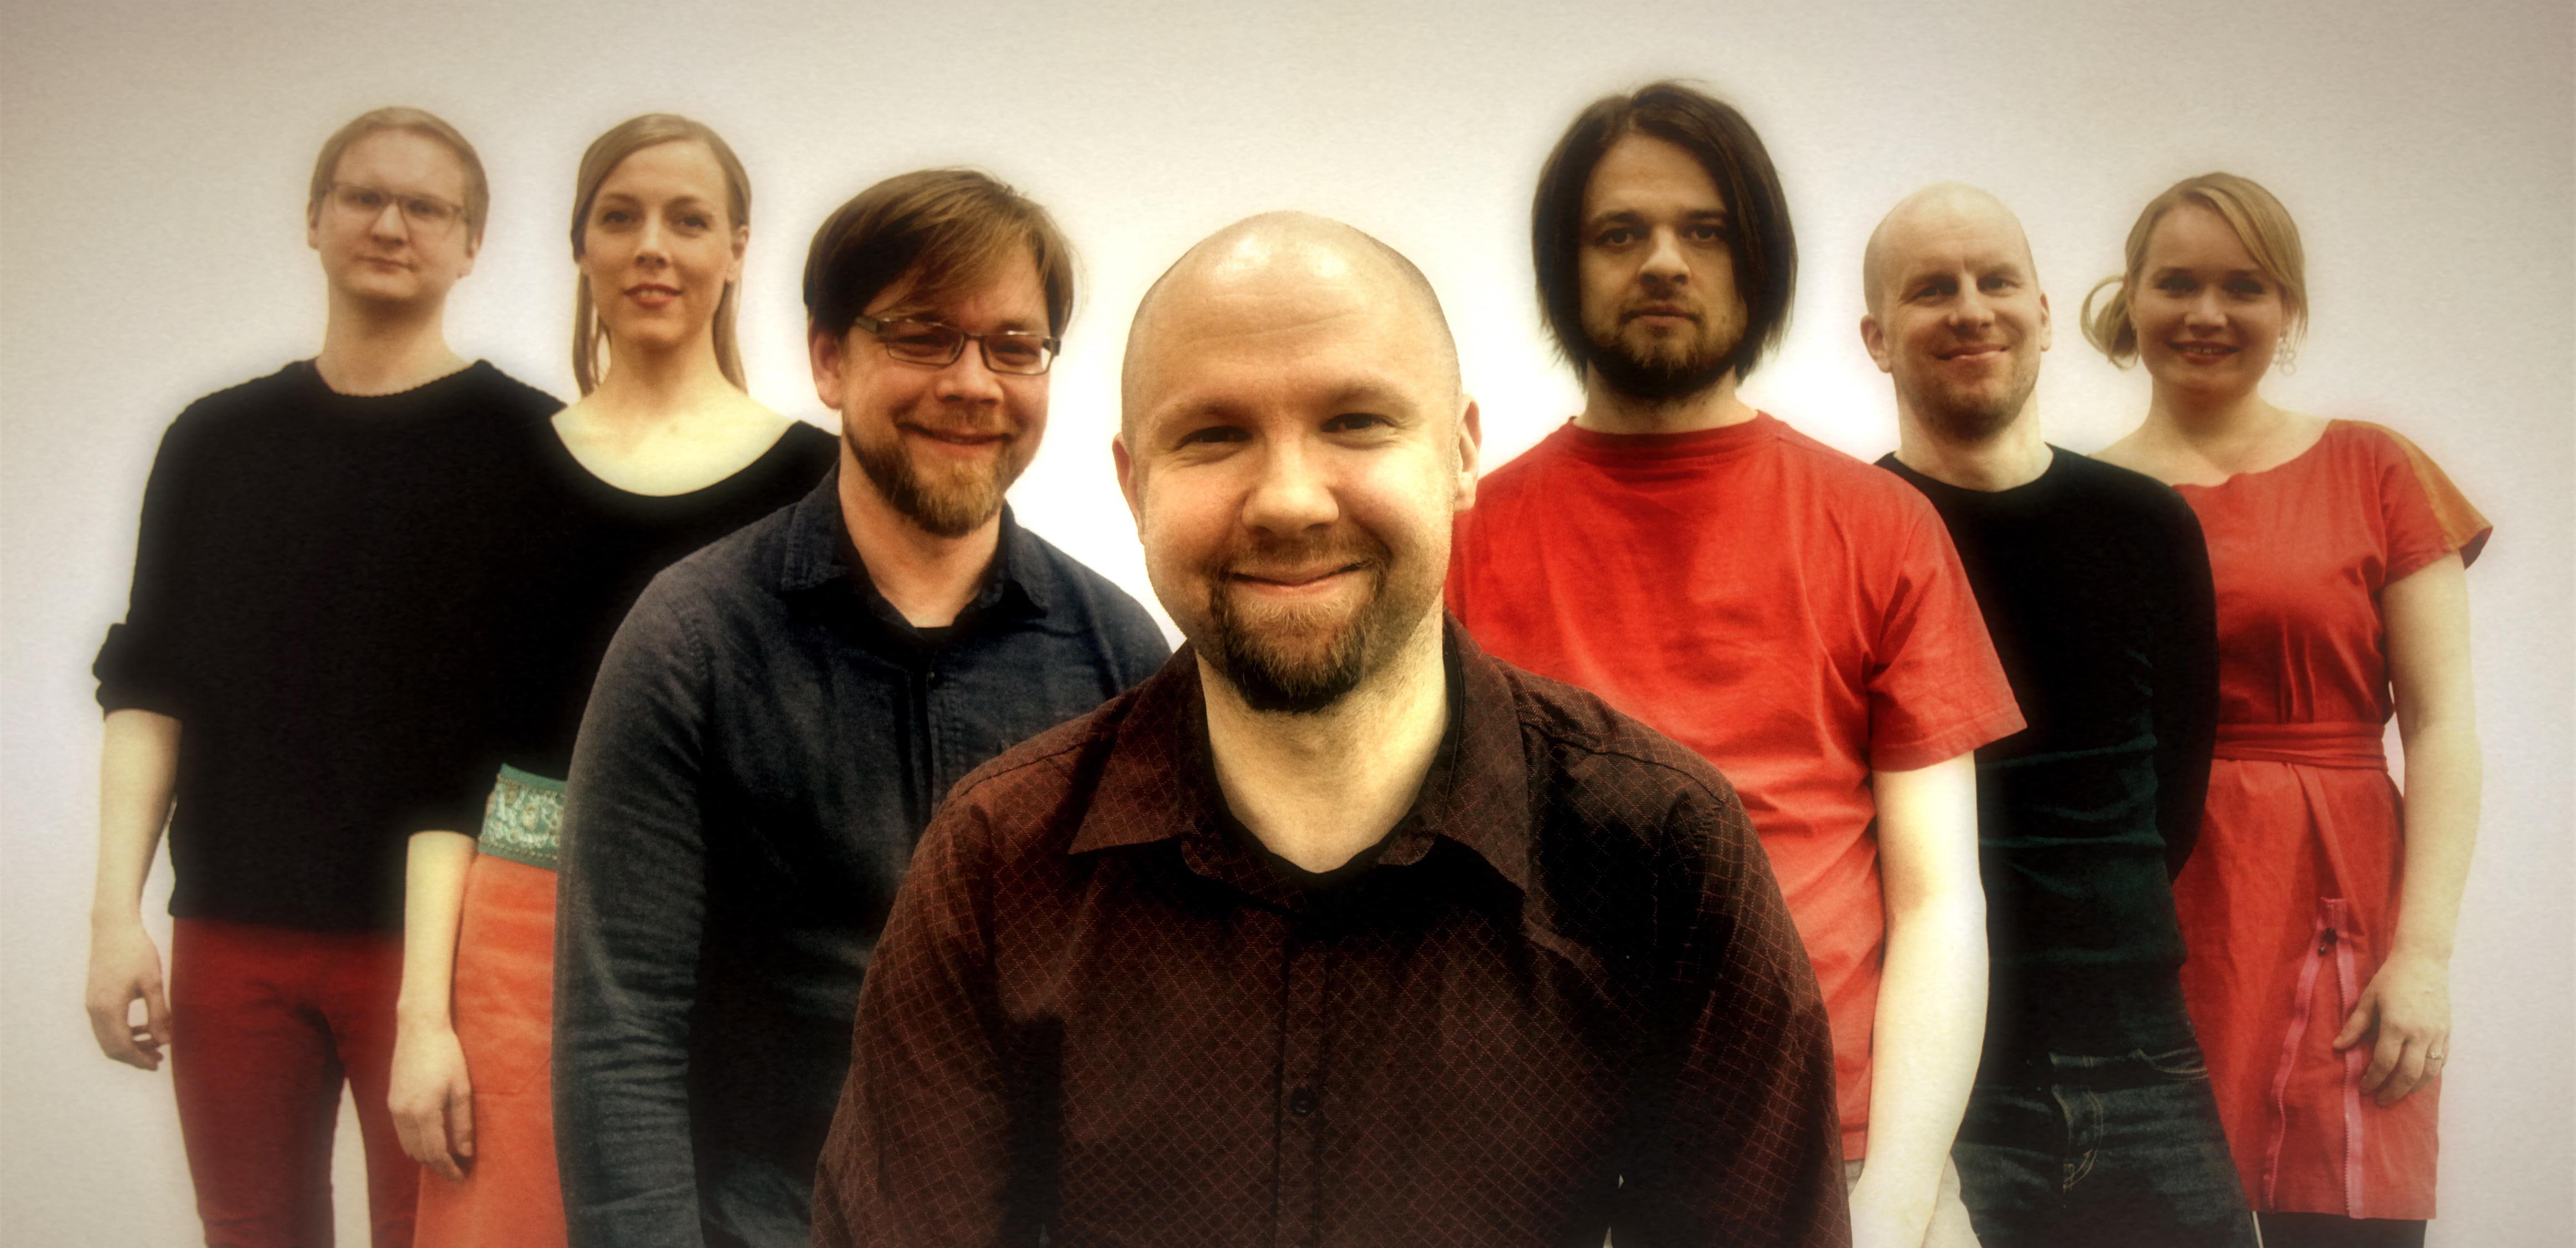 Juha Kujanpää Ensemble